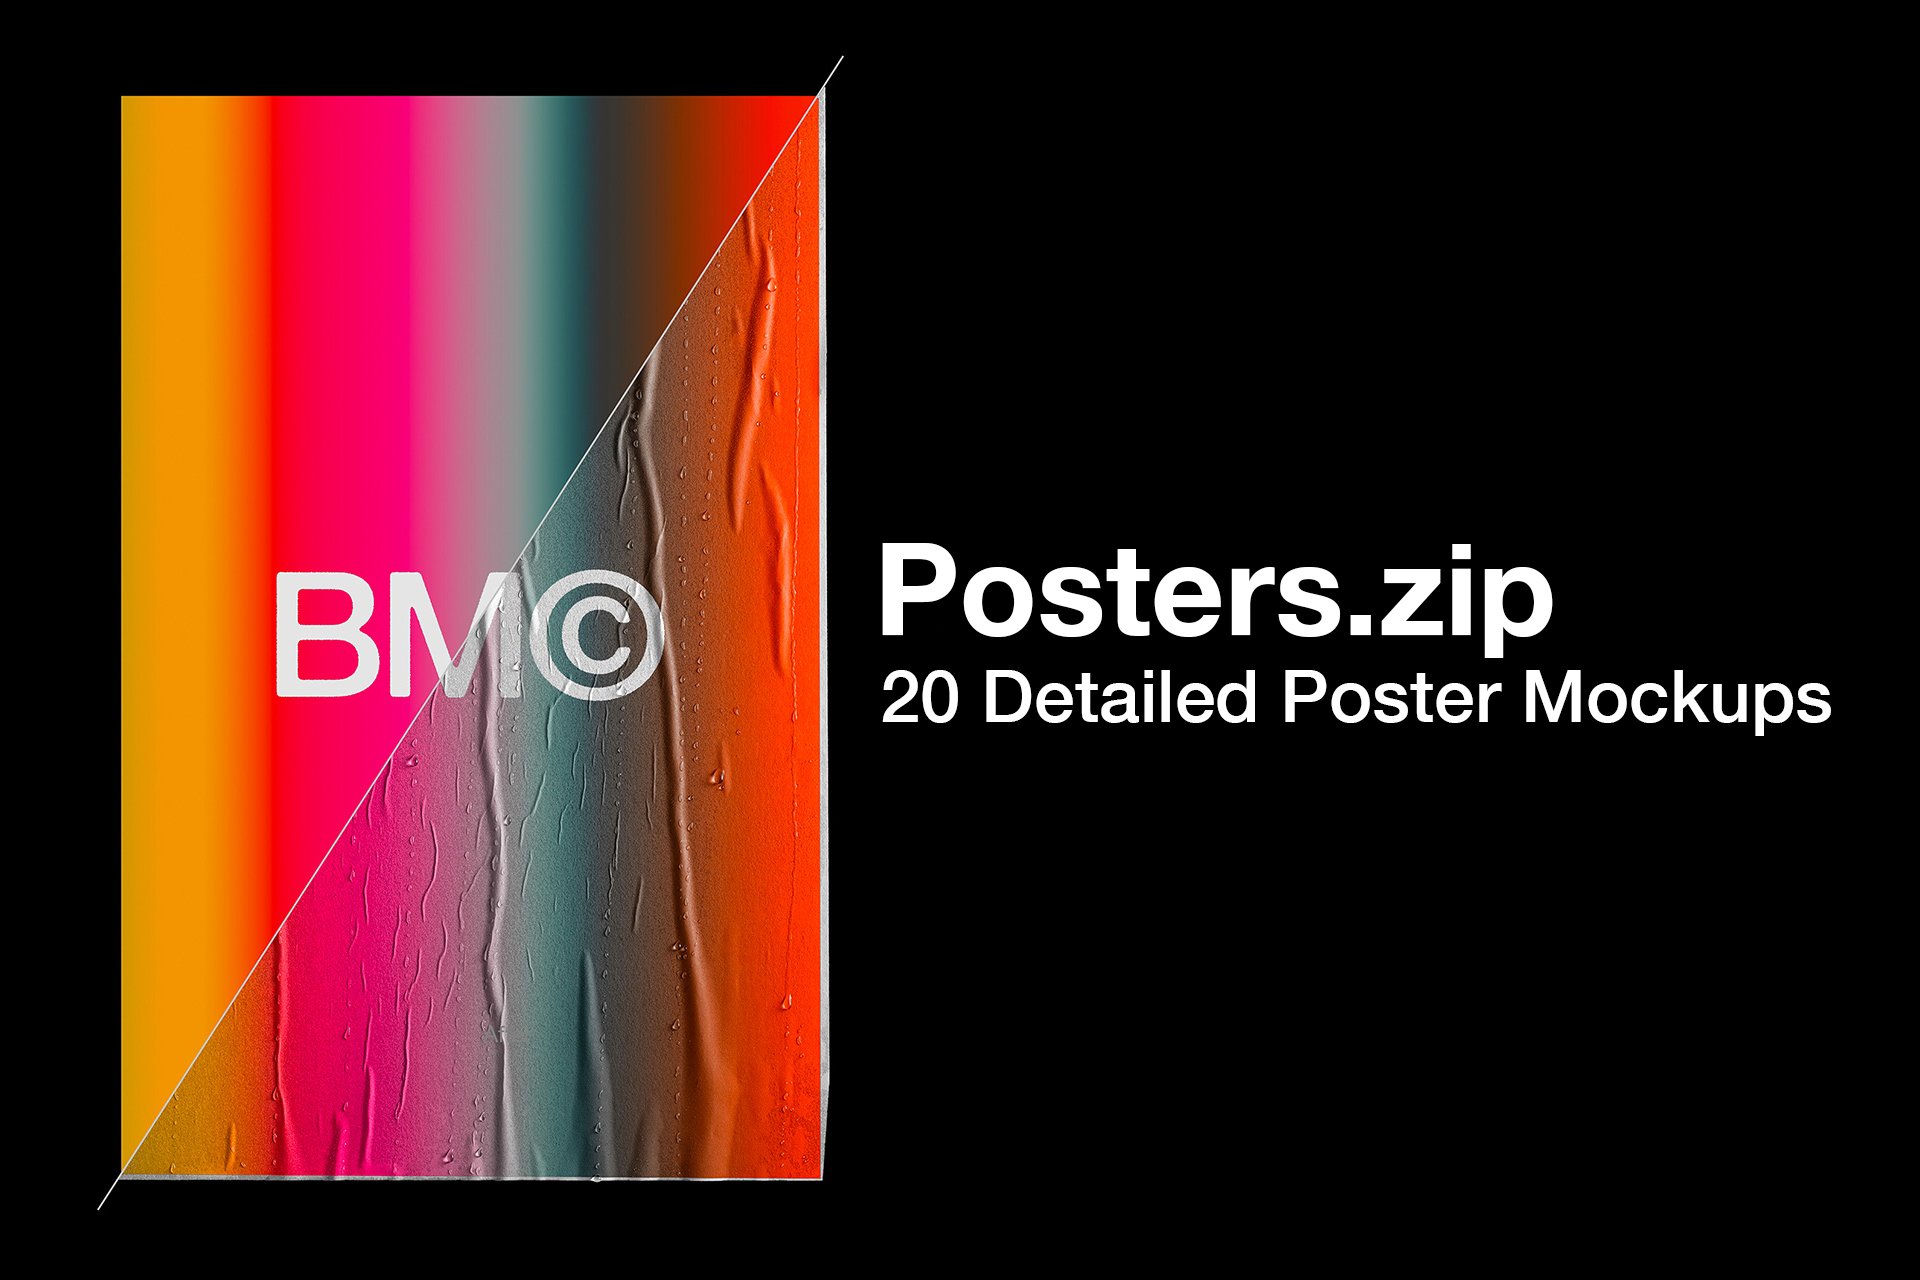 20款潮流高级褶皱胶印写真海报设计样机贴图PSD模板 Blkmarket – 20 Poster Mockups设计素材模板